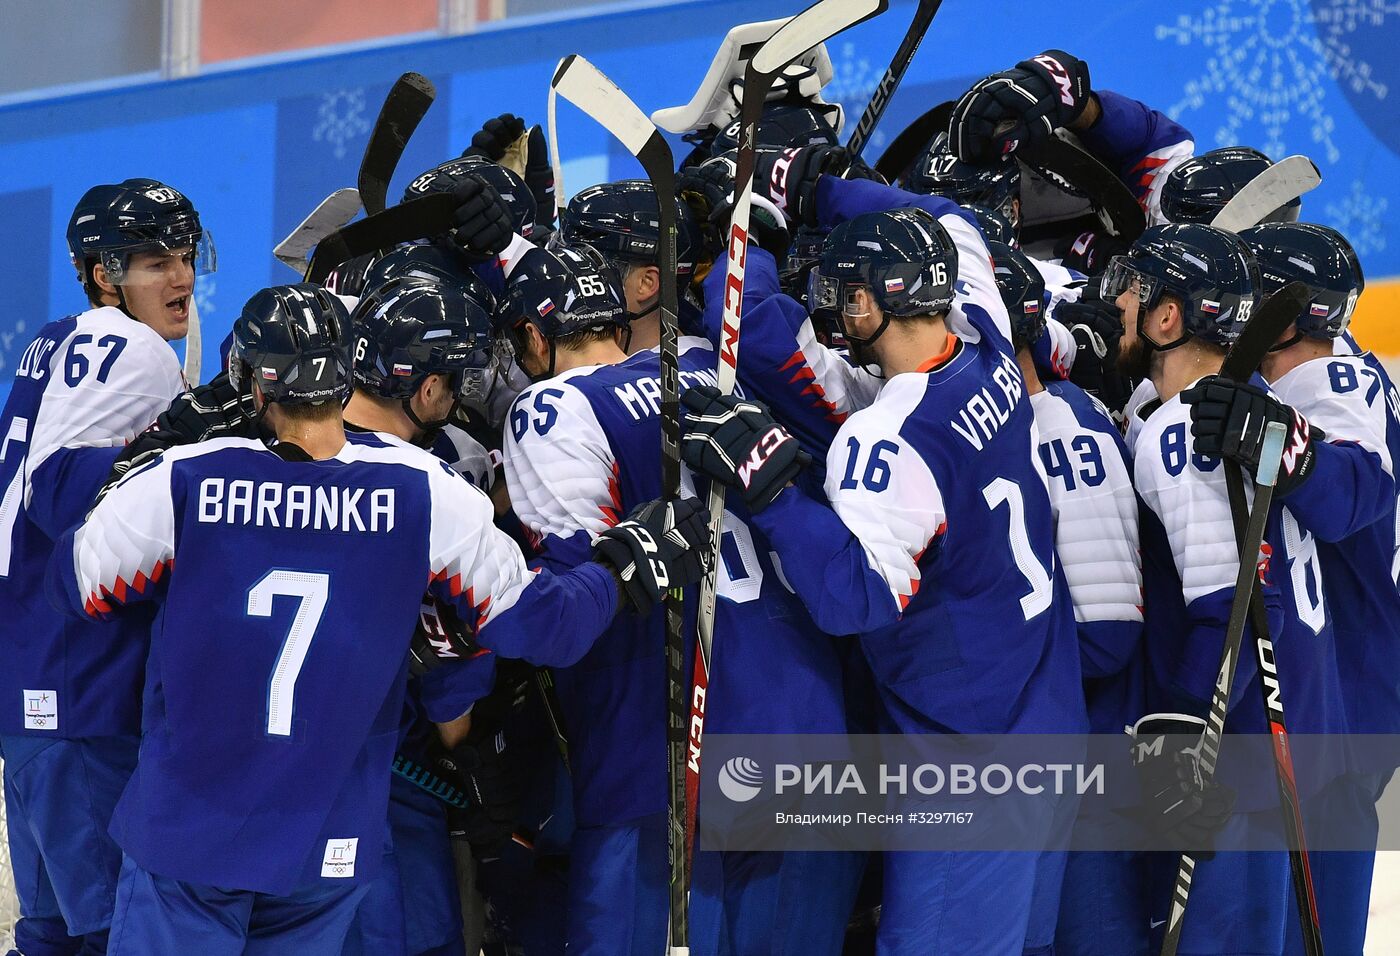 Олимпиада 2018. Хоккей. Мужчины. Матч Словакия - Россия